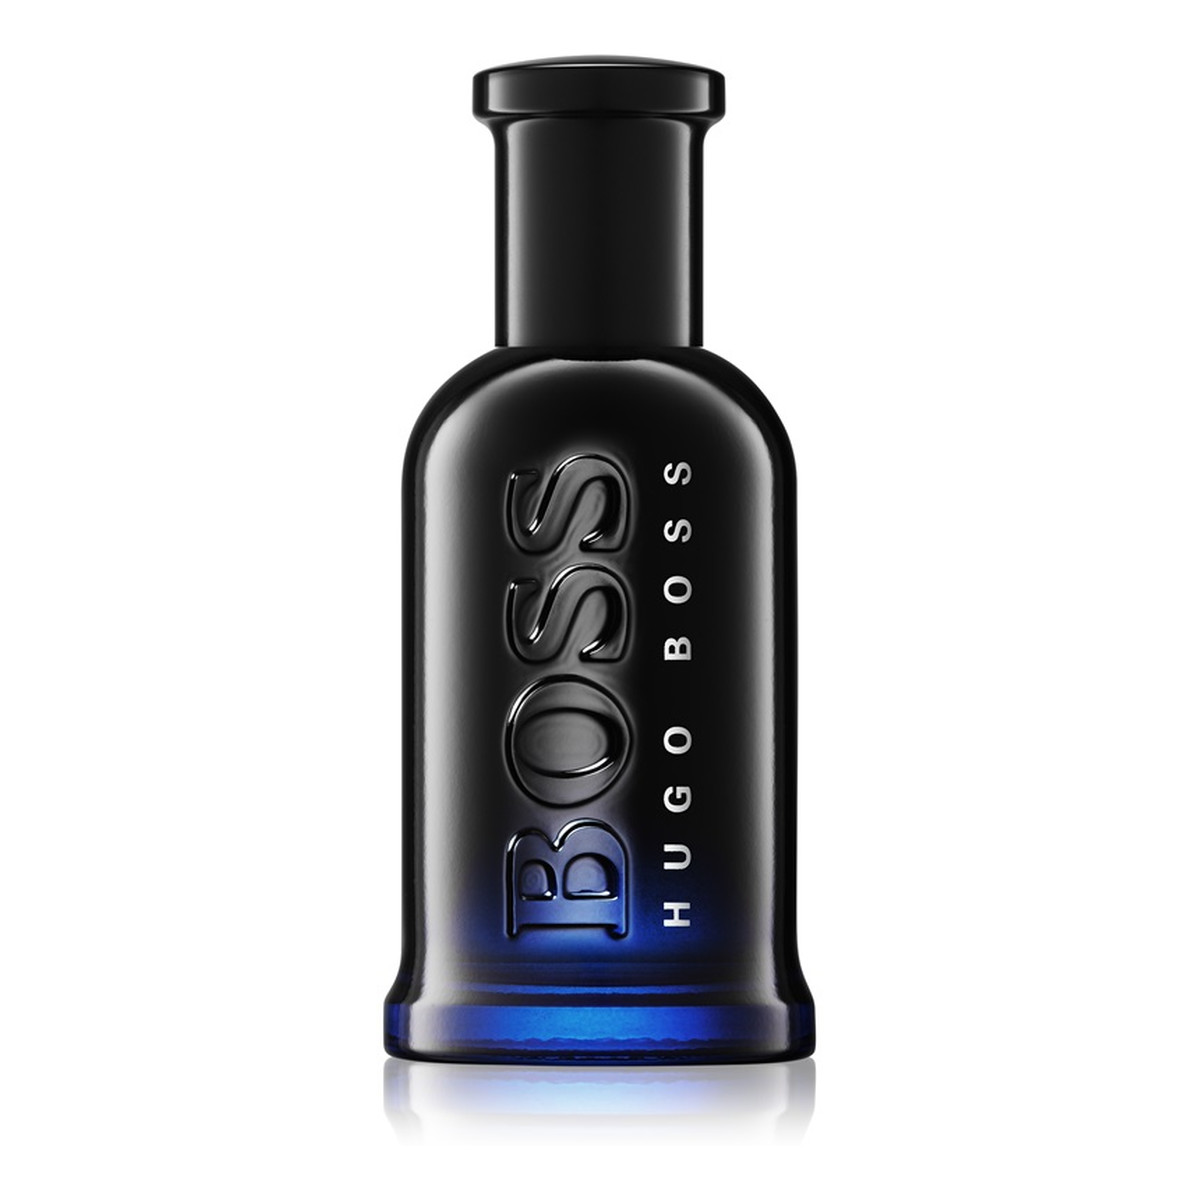 Hugo Boss Bottled Night Woda Toaletowa 50ml